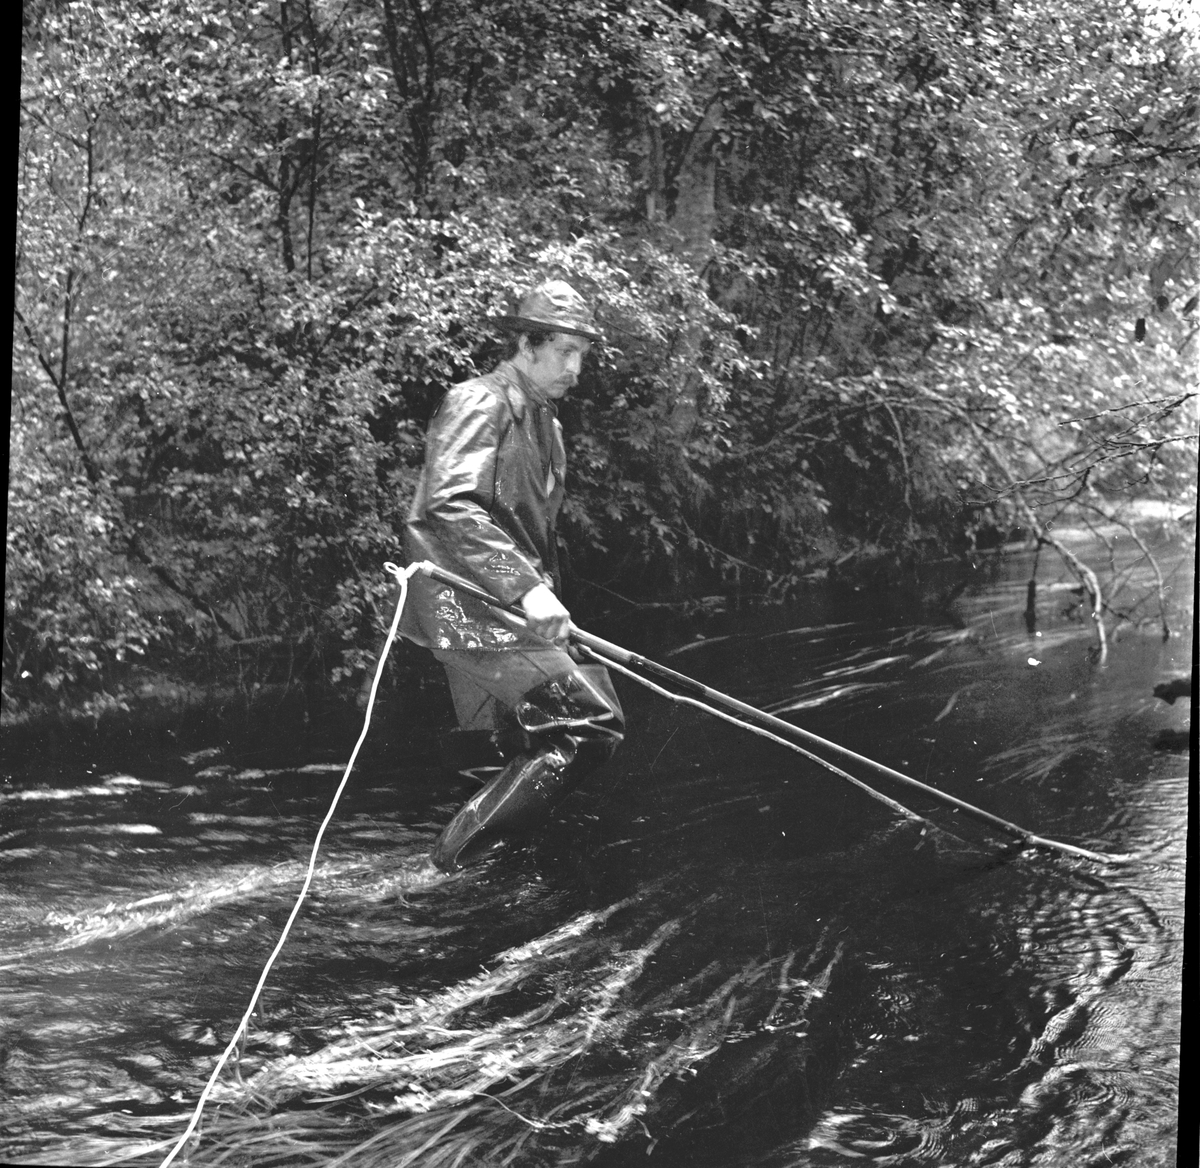 Fiskräkning Lassekrog
Tigerström
September 1972